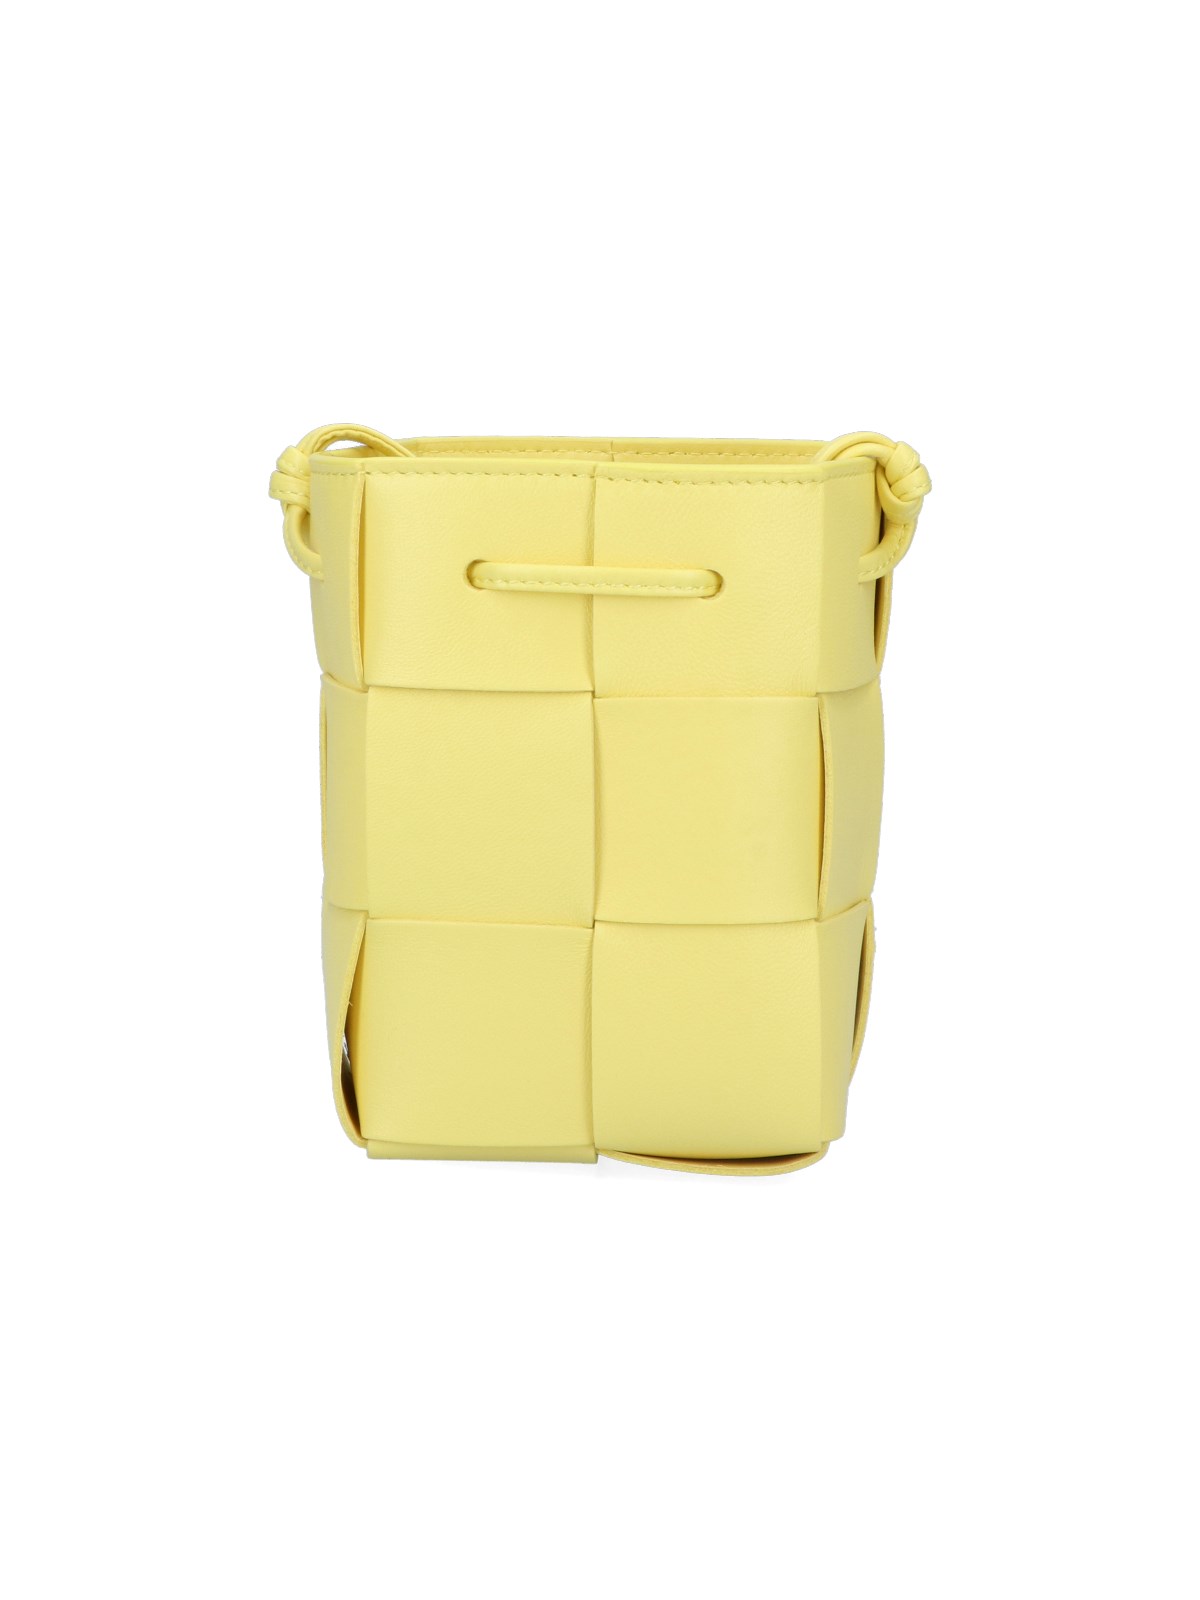 Bottega Veneta Small Cassette Bucket Bag in Yellow